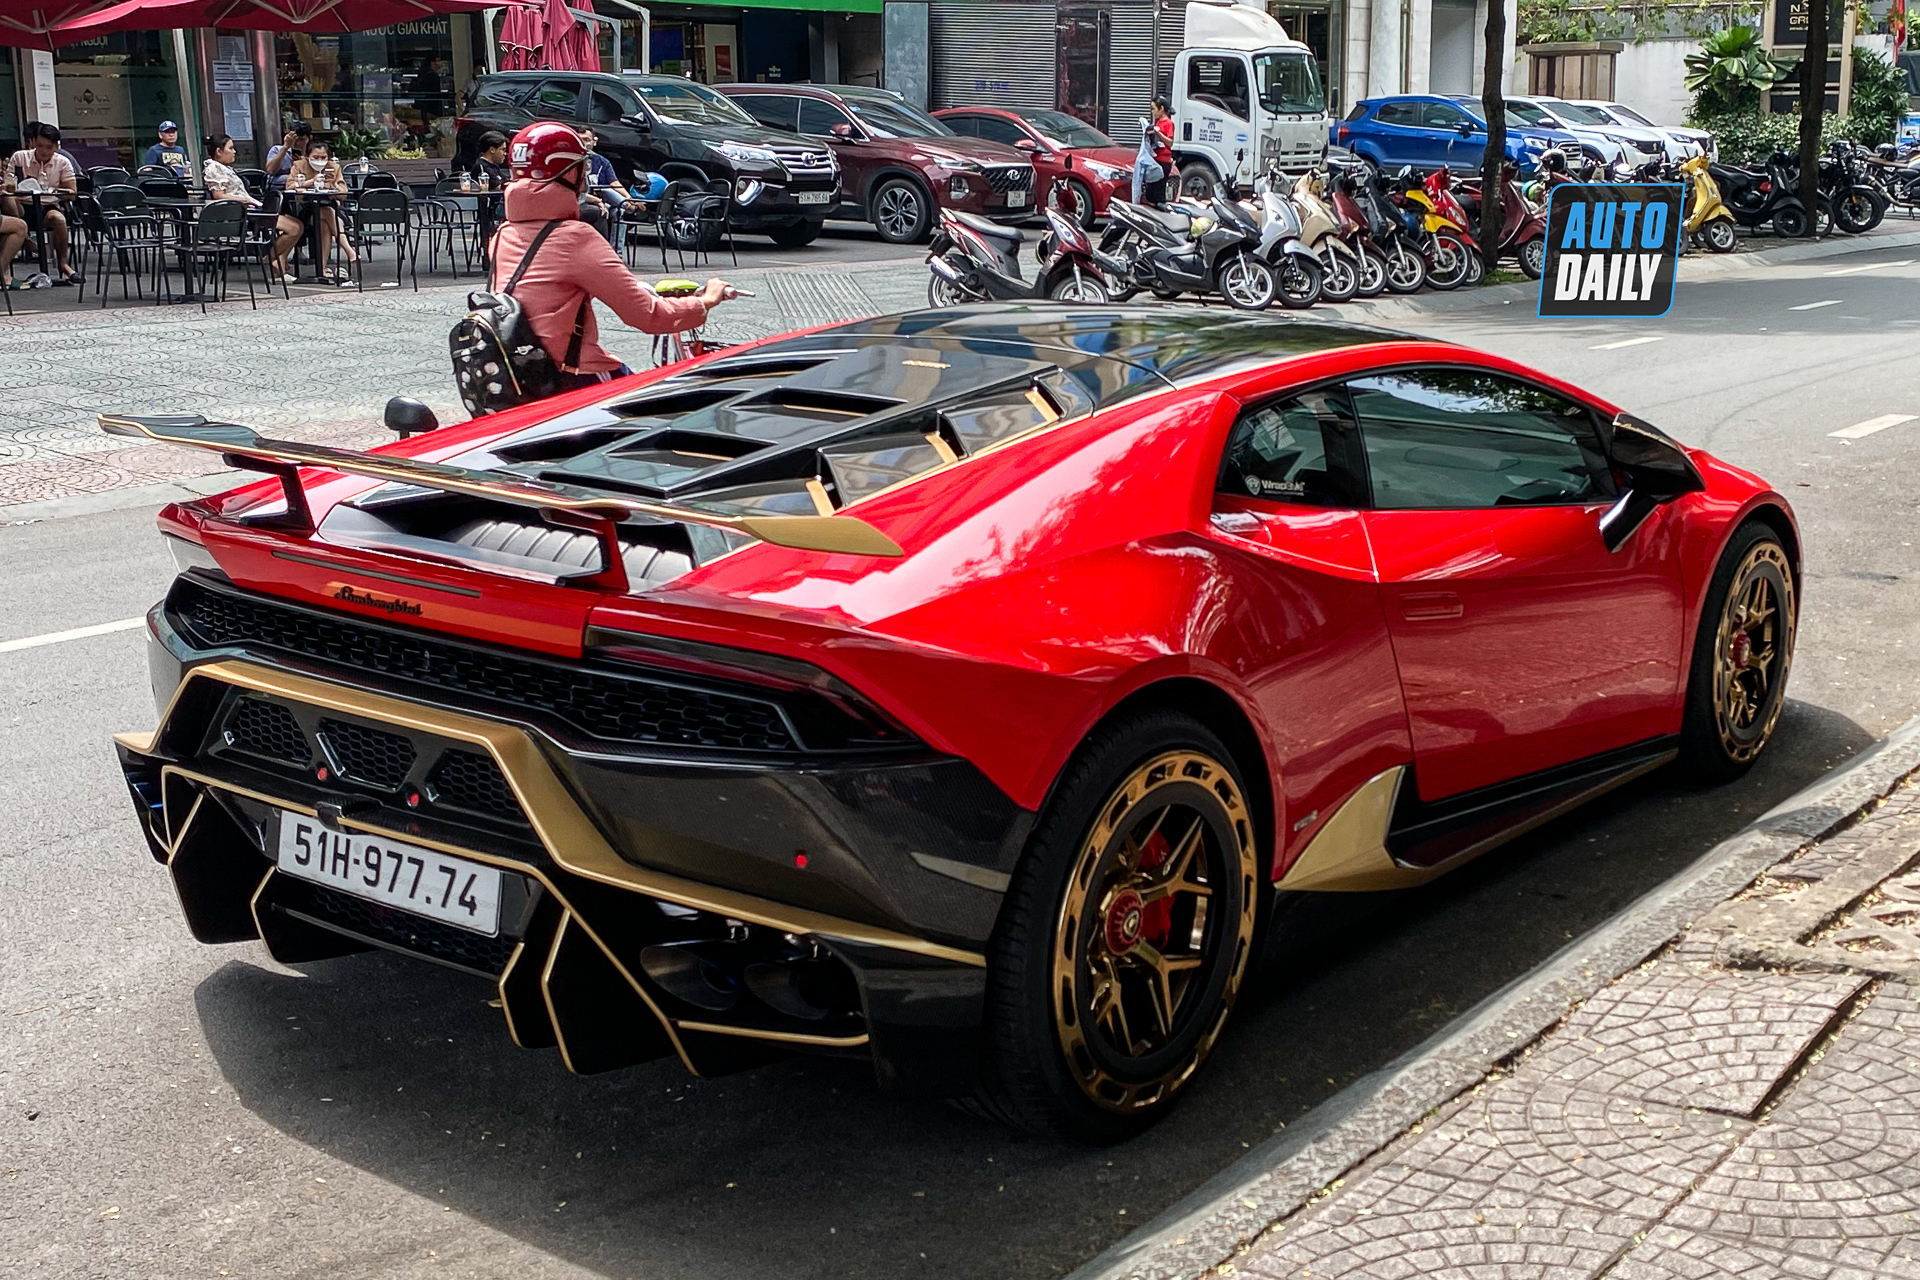 Bắt gặp Lamborghini Huracan độ khủng của đại gia Sài Gòn, bộ mâm hàng thửa giá hàng trăm triệu lamborghini-huracan-do-bo-mam-tram-trieu-autodaily-7.JPG